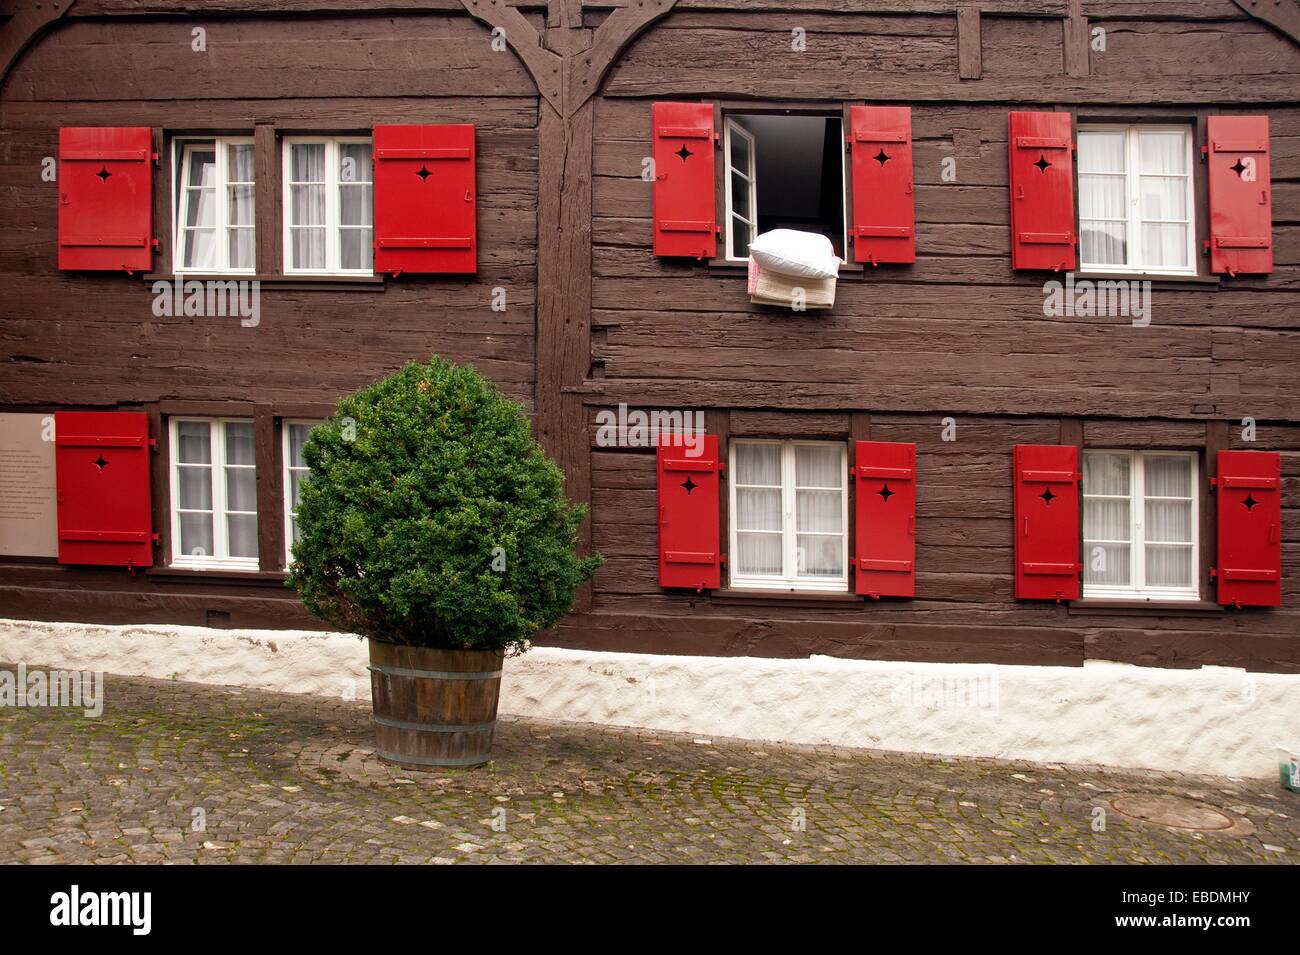 Schweizer Holzhäuser mit roten hölzernen Fensterläden, Stadt Zug, Kanton  Zug, Schweiz Stockfotografie - Alamy